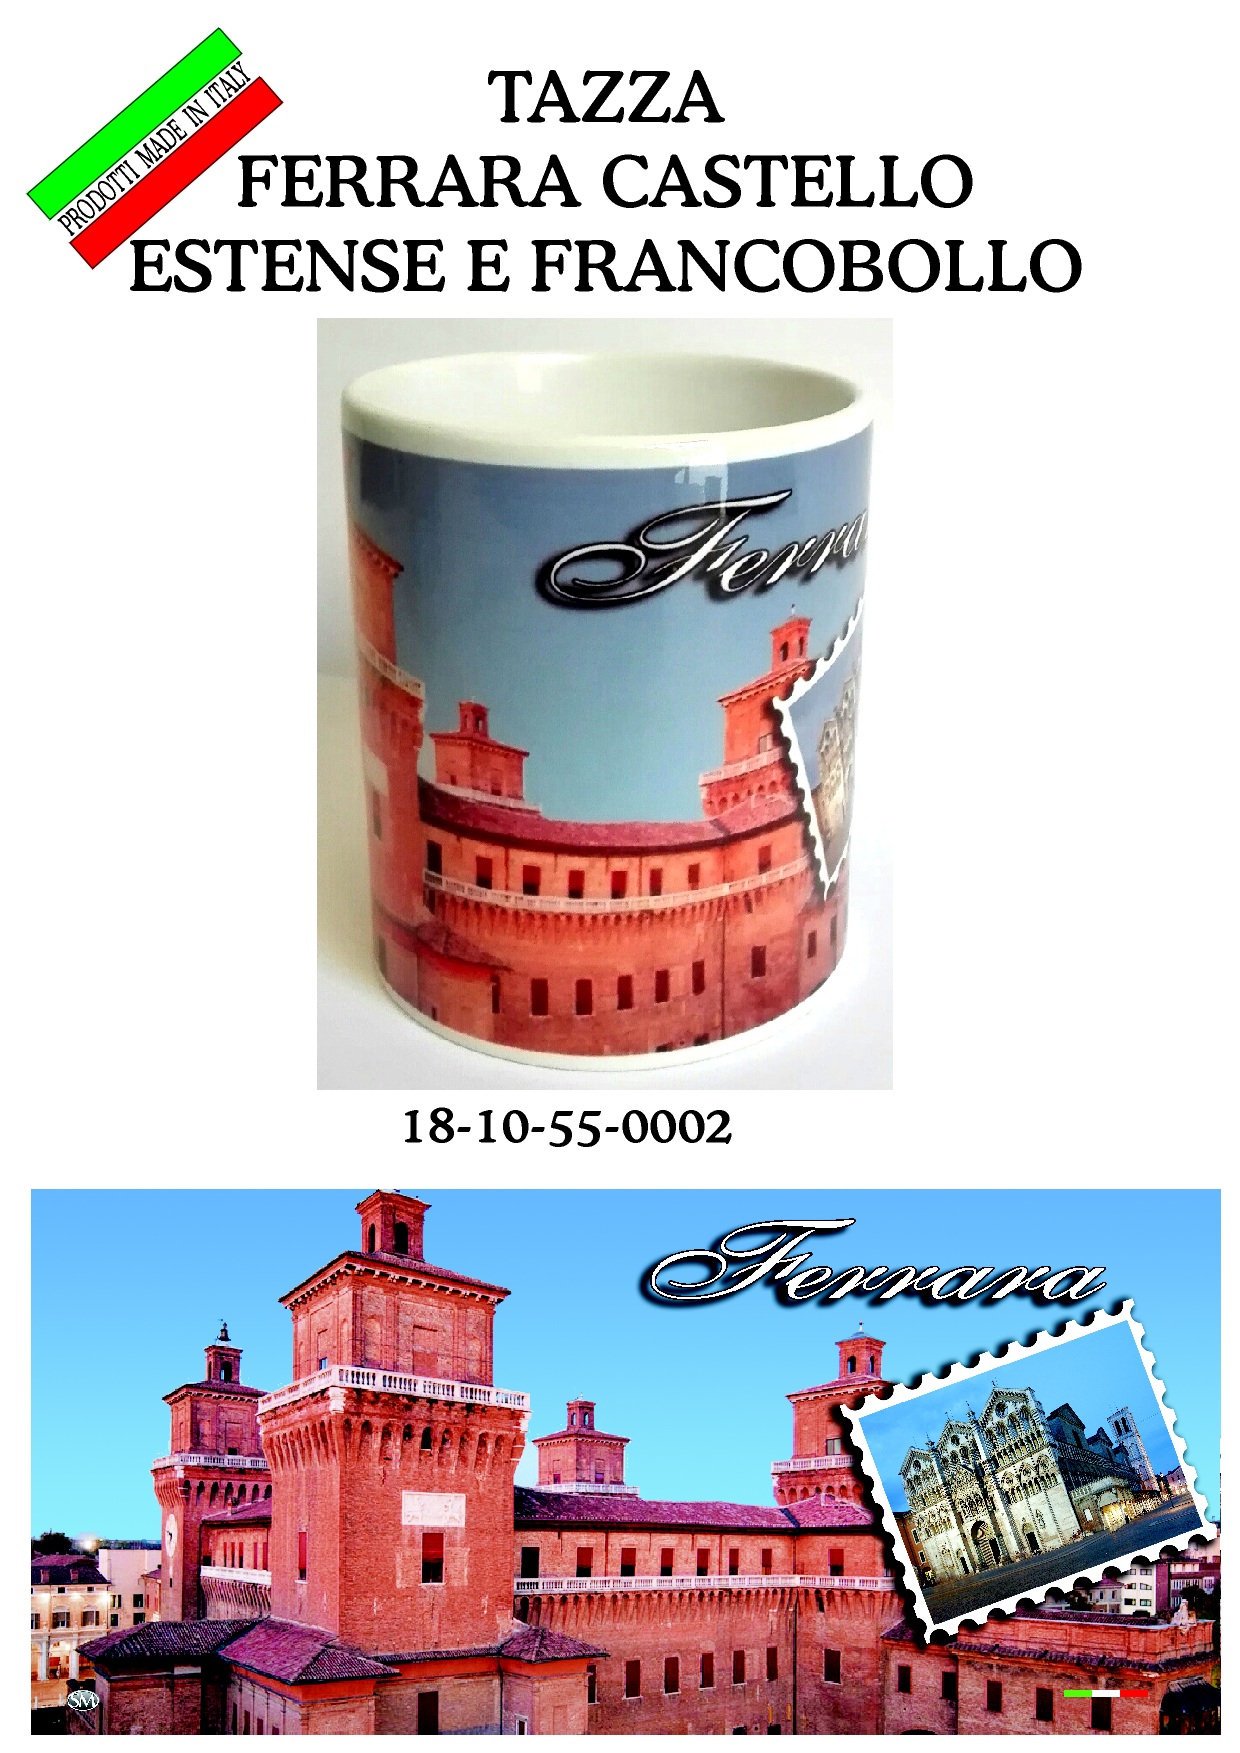 18-10-55-0002 Tazze Ferrara Castello Estense Francobollo CONFEZIONI da n.1 Pz.